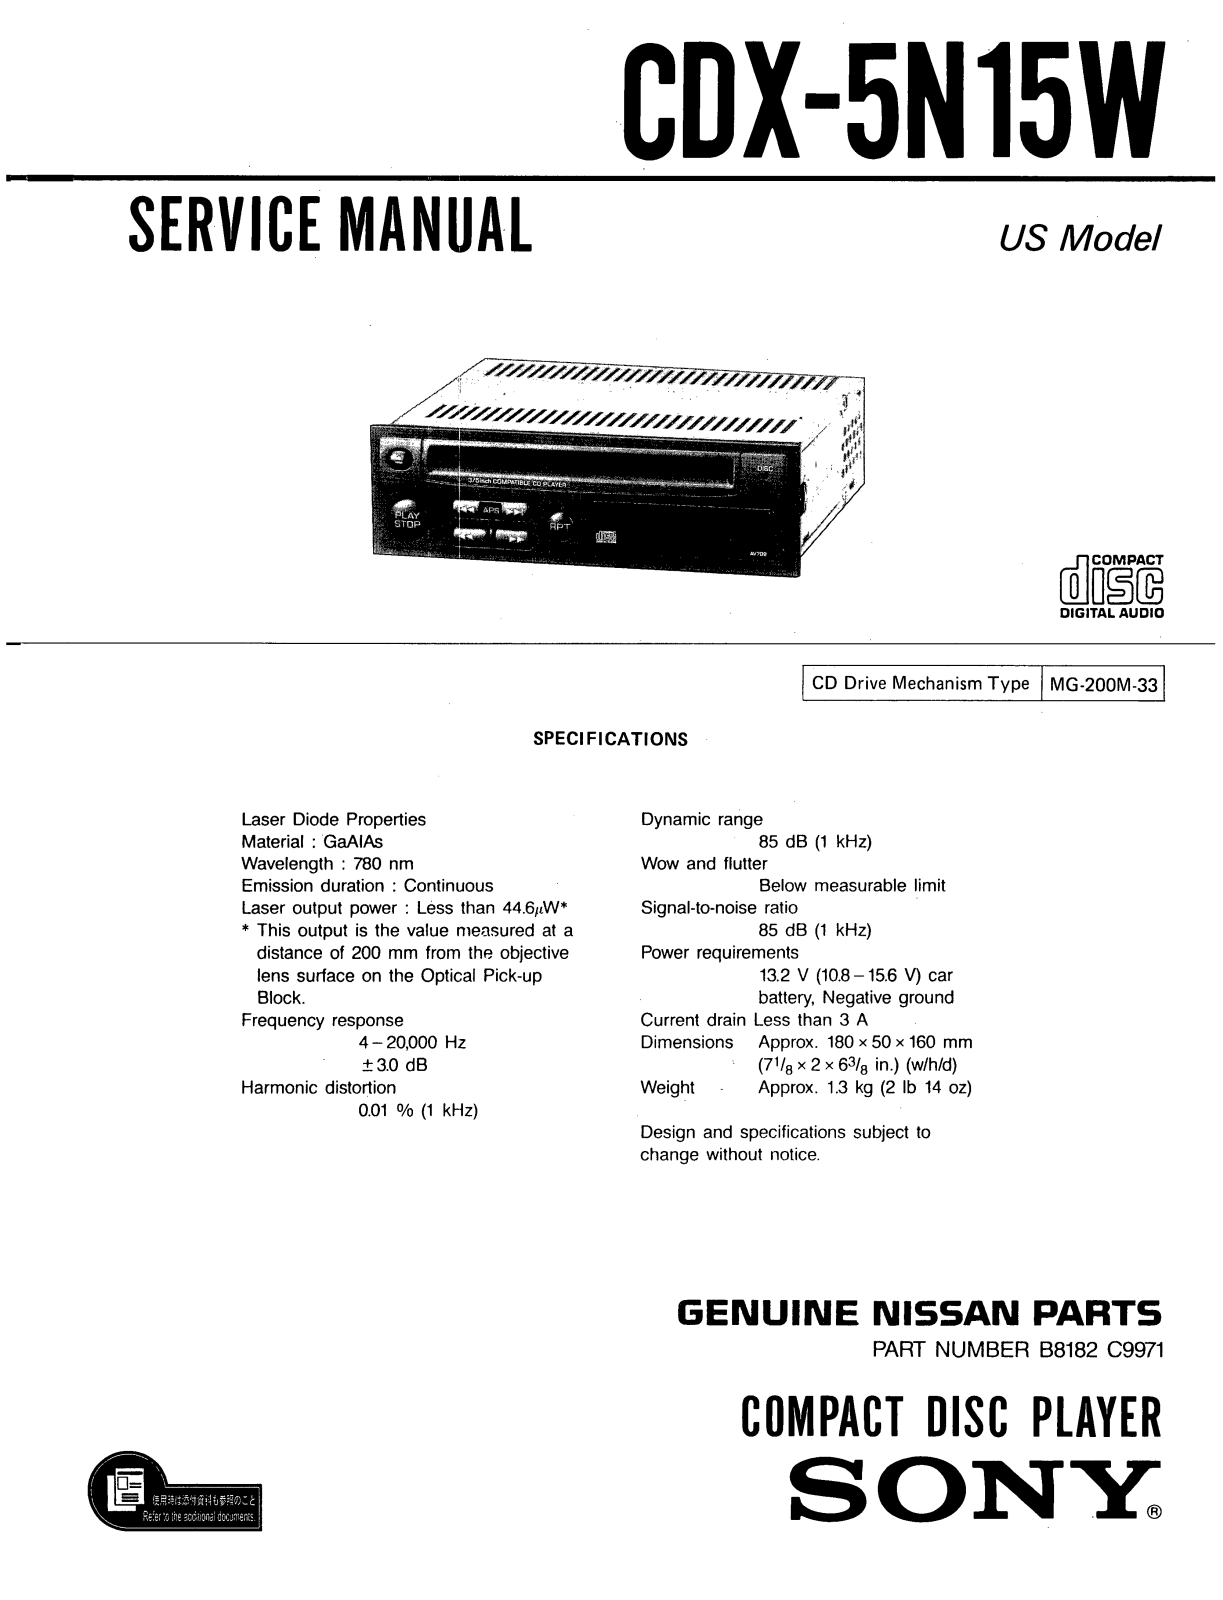 SONY CDX 5N15W Service Manual